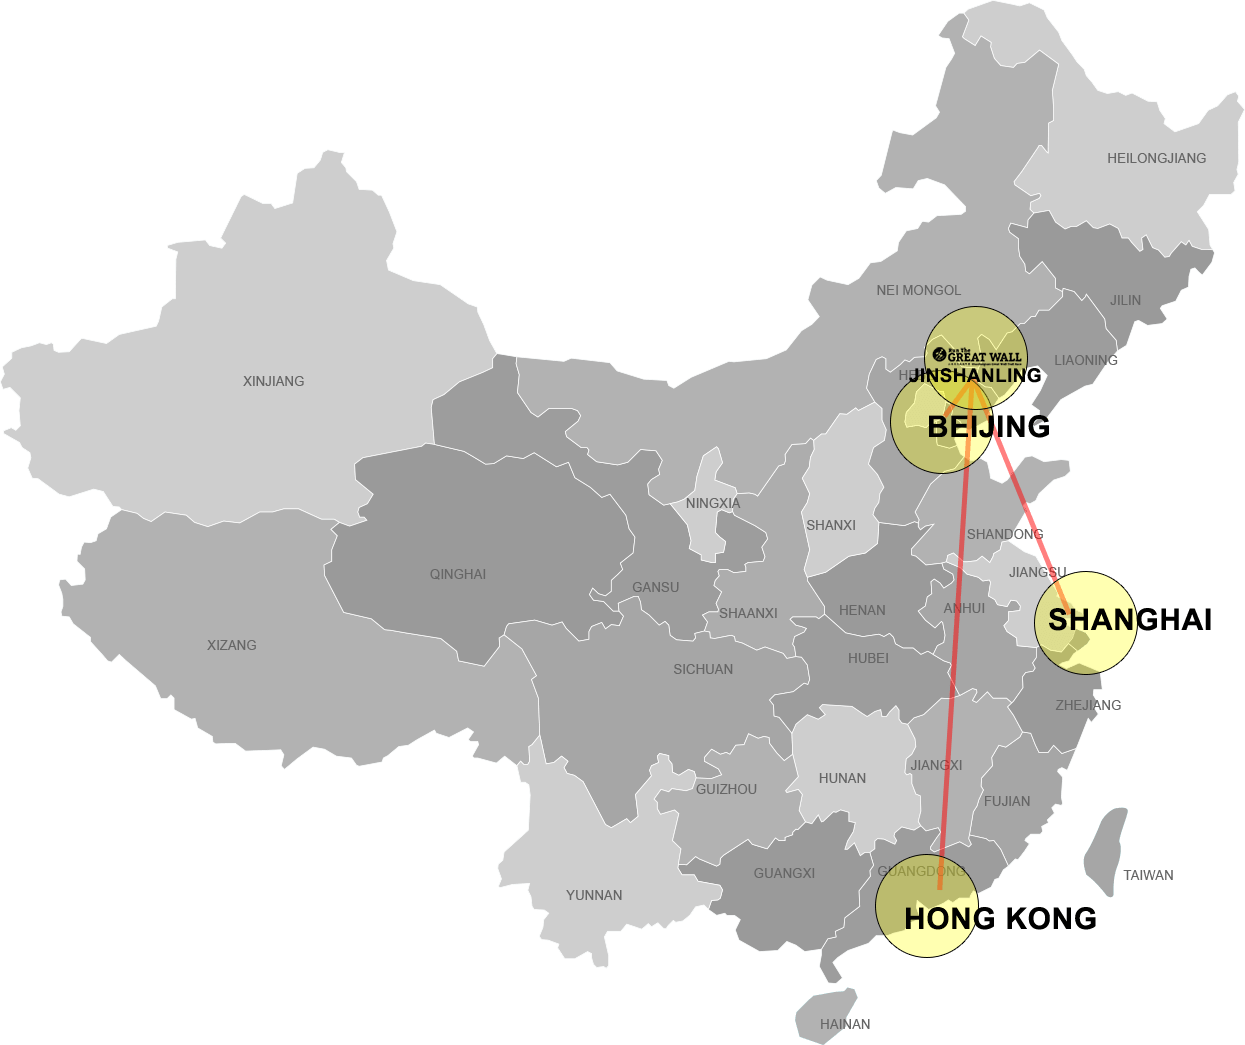 Jinshanling Great Wall Map